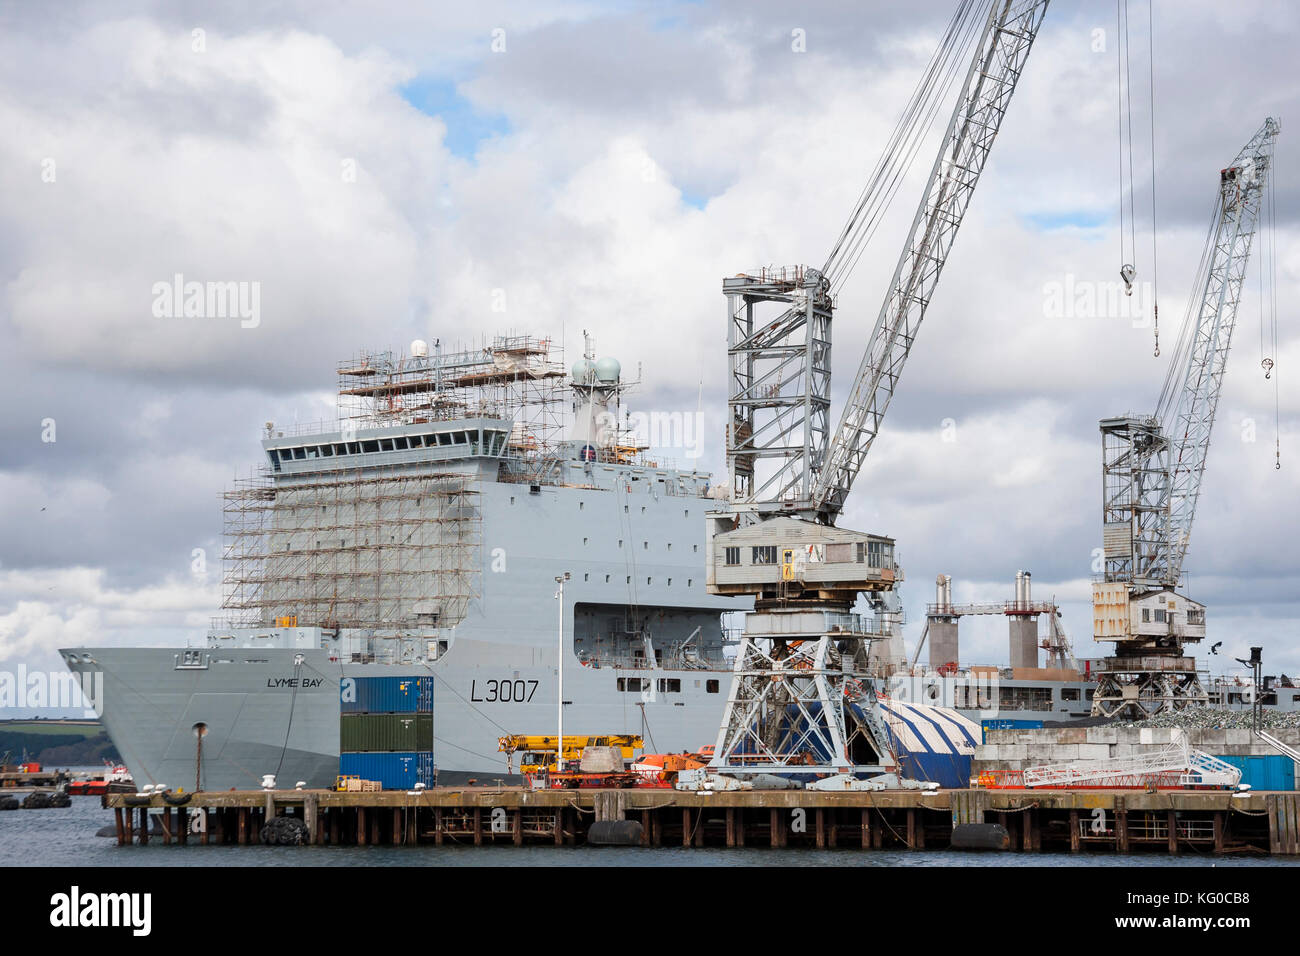 Bateau de la baie de Lyme de demandes en cours de maintenance dans la région de Falmouth docks, UK Banque D'Images